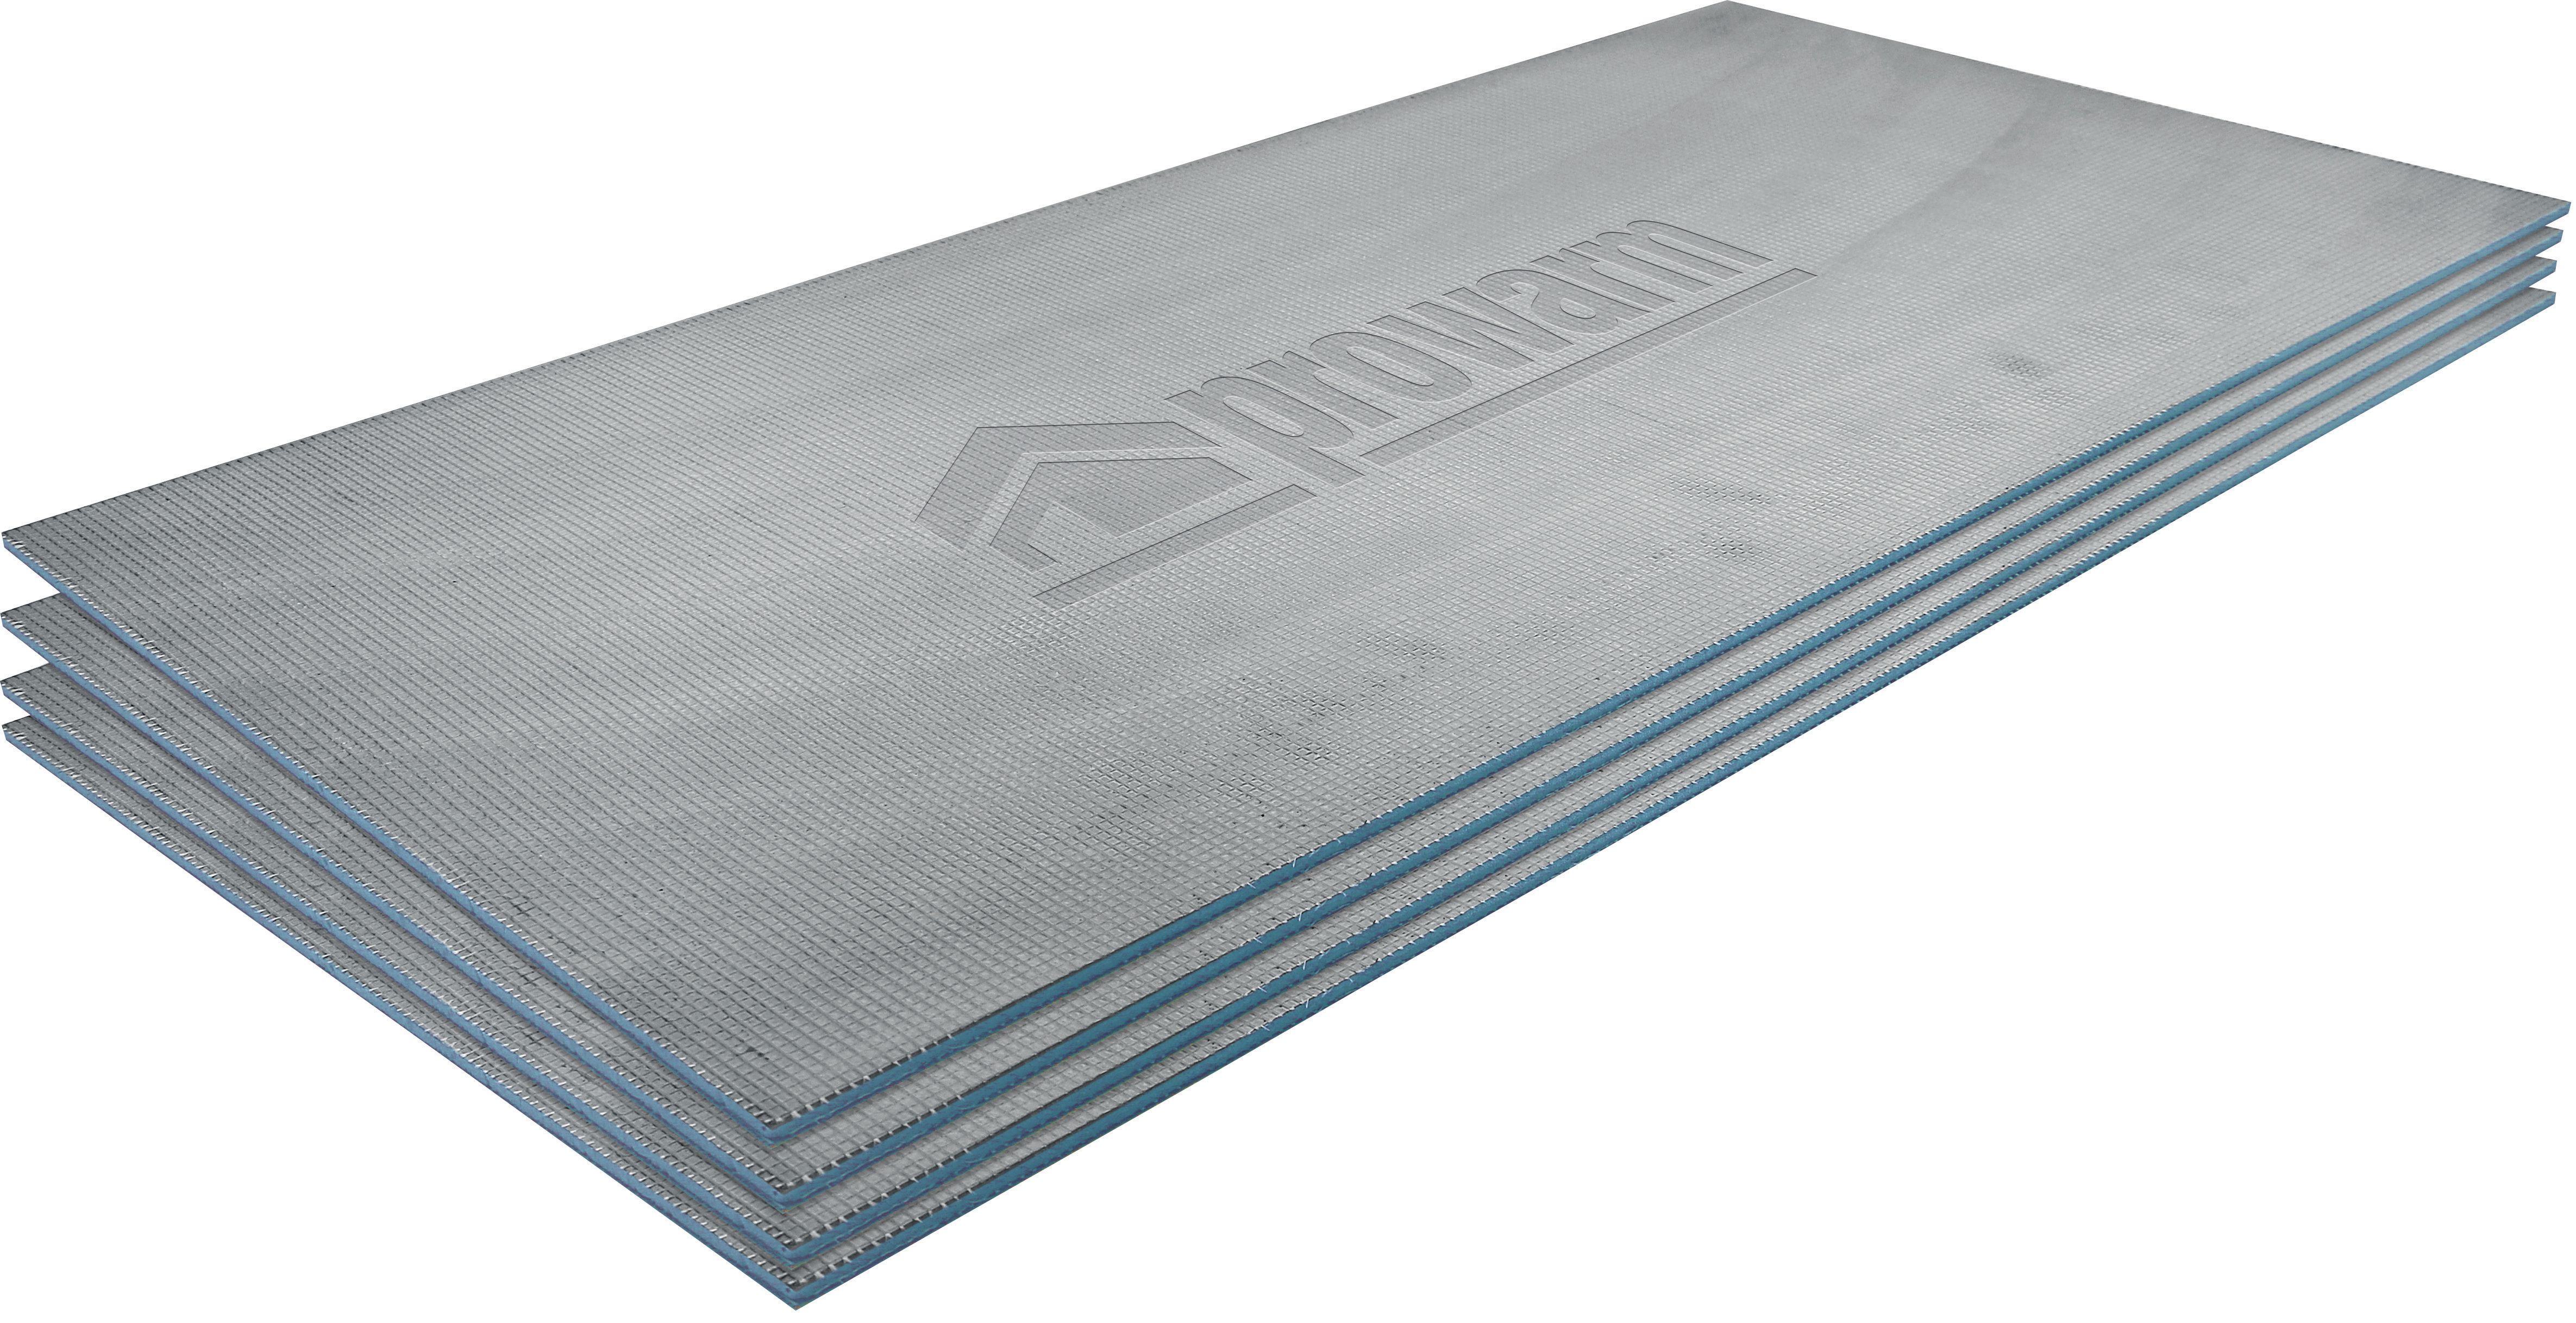 ProWarm BACKER-PRO Tile Insulation Backer Board - 1200 x 600 x 6mm